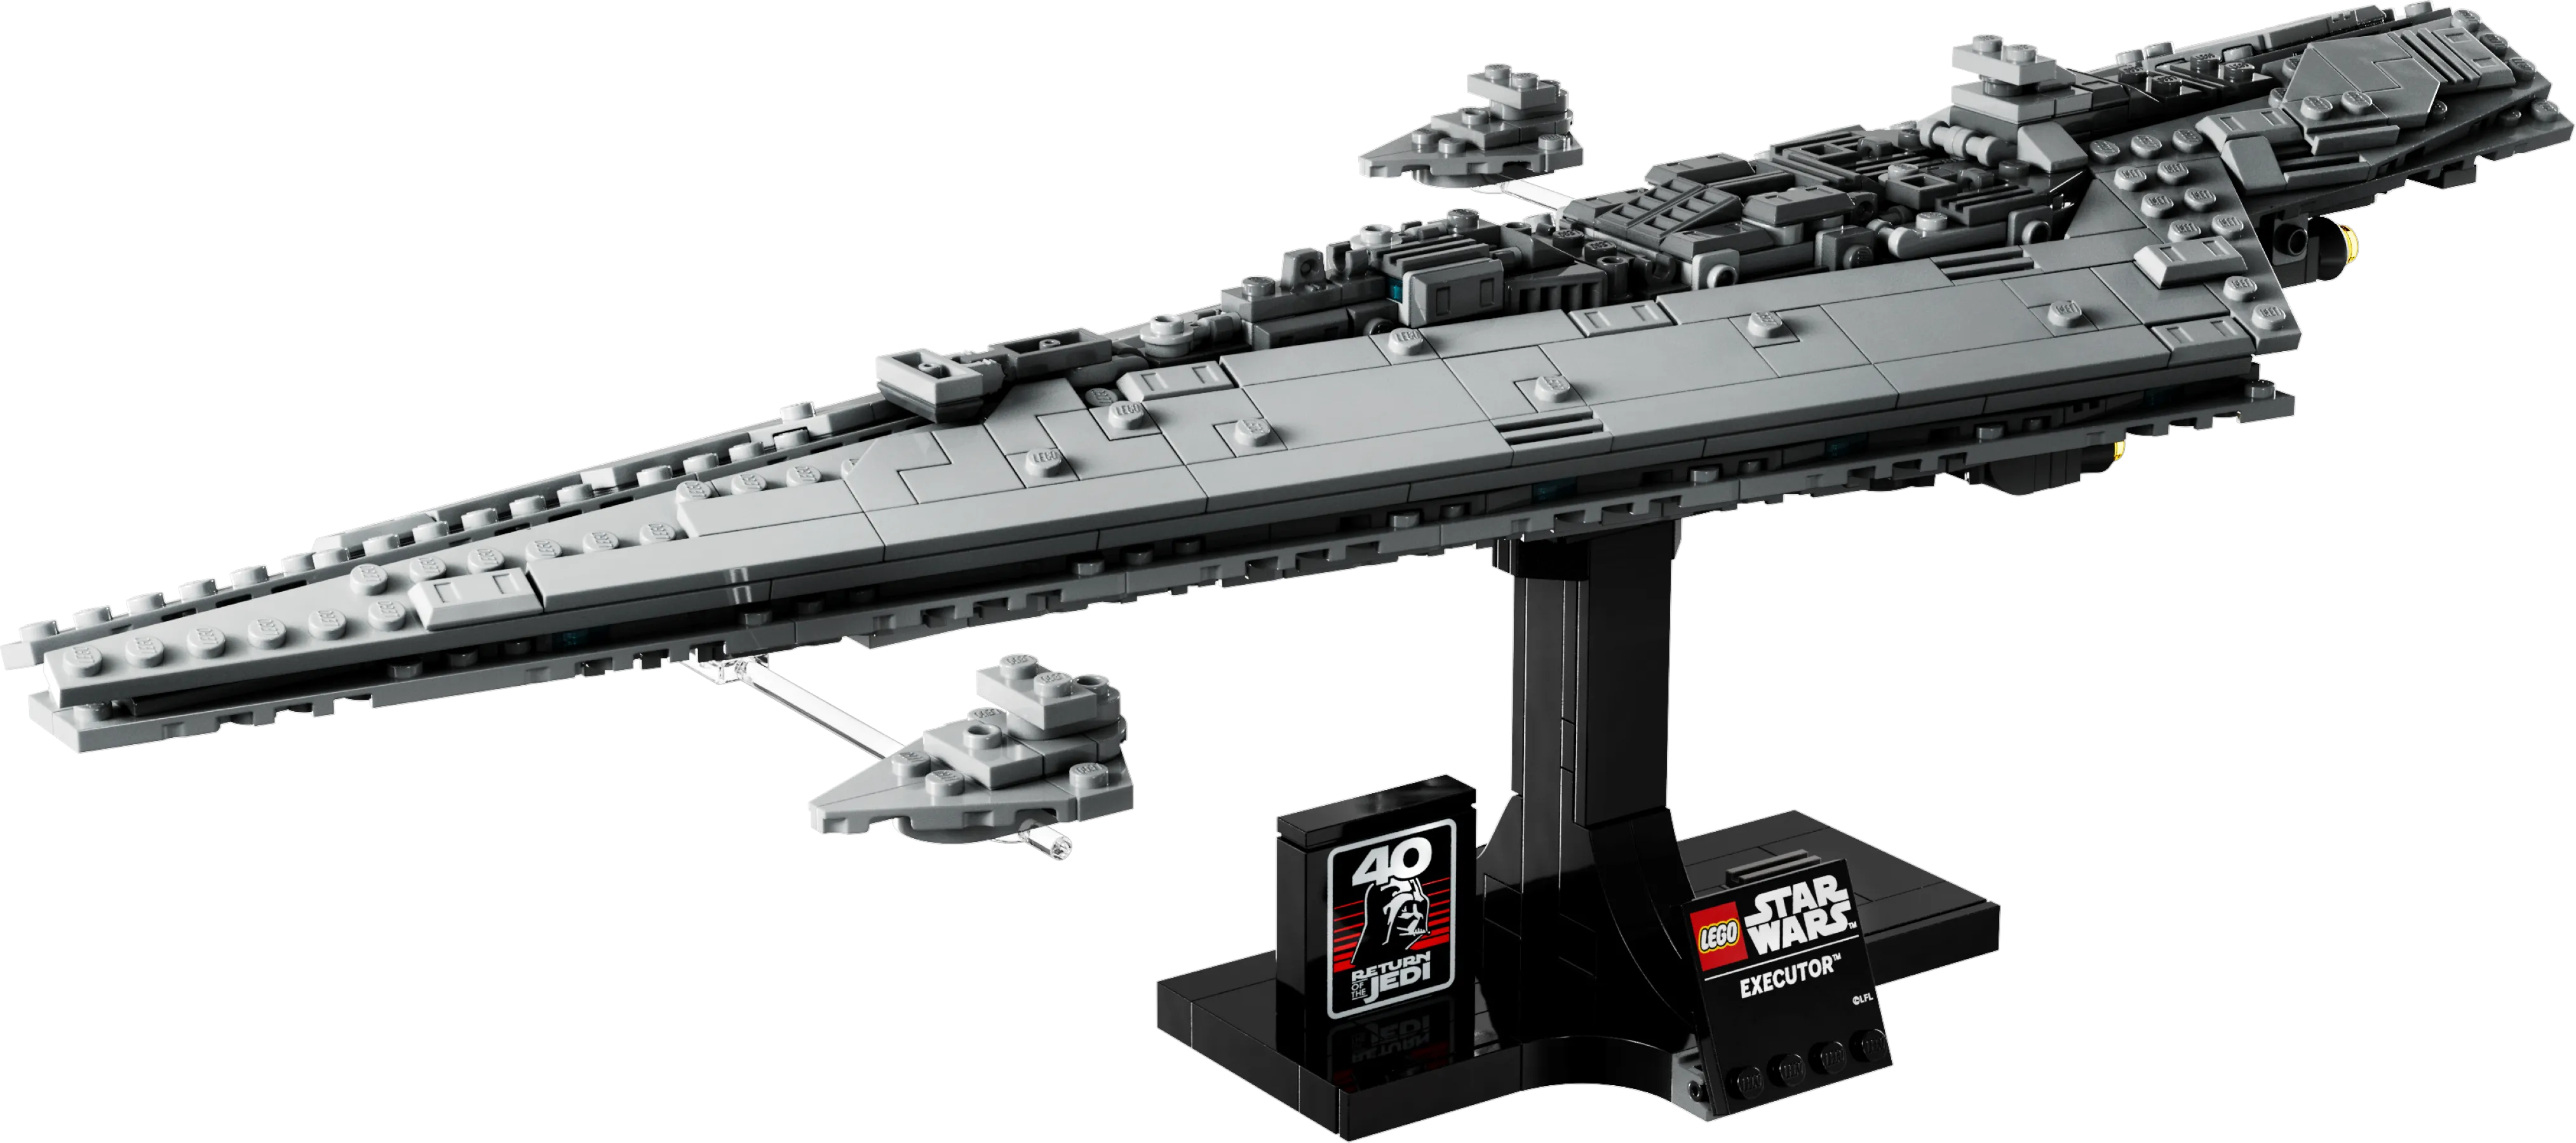 LEGO Star Wars - UCS Venator Class Star Destroyer - Largest Ever Built!, LEGO, Star Wars, Creations, Designs, Sets, Pl…